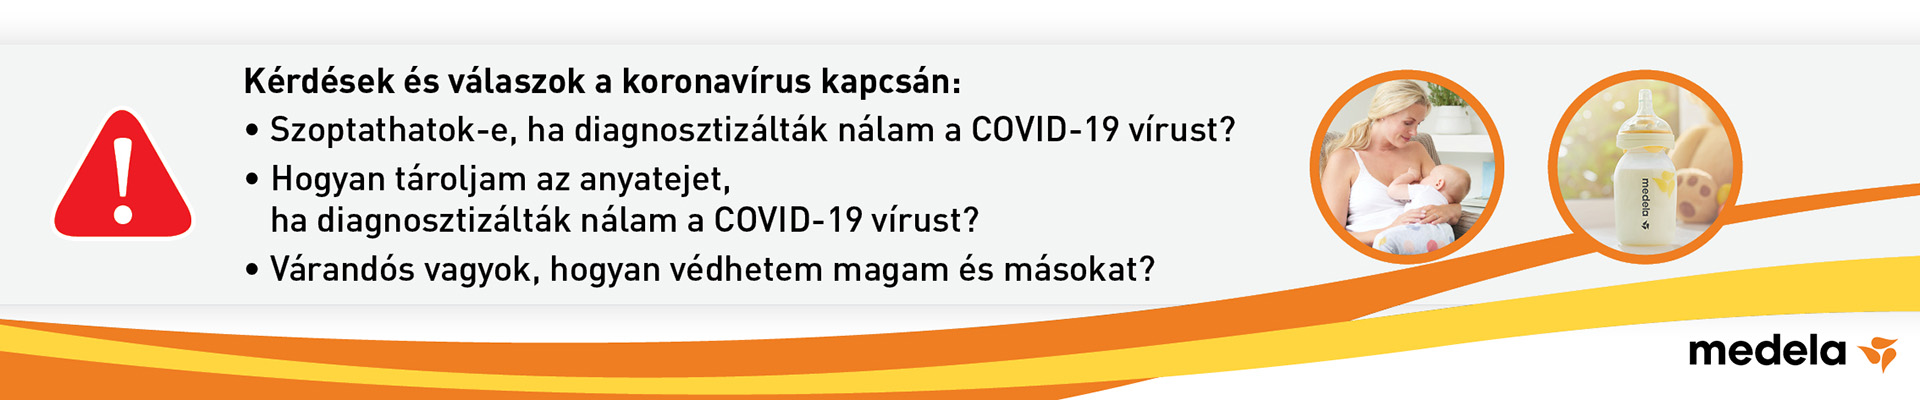 Szoptatással kapcsolatos kérdések koronavirus járvány esetén